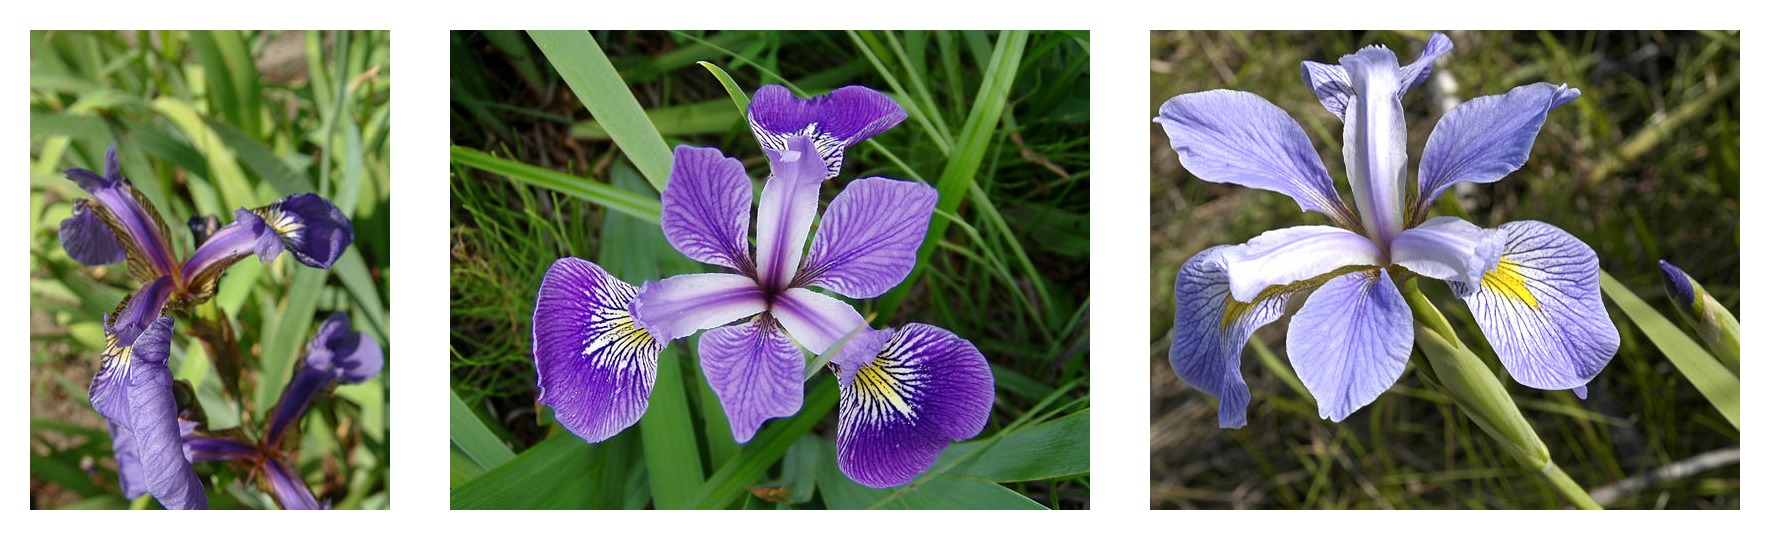 Geometria pétala comparada para três espécies de íris: Iris setosa, Iris virginica e Iris versicolor